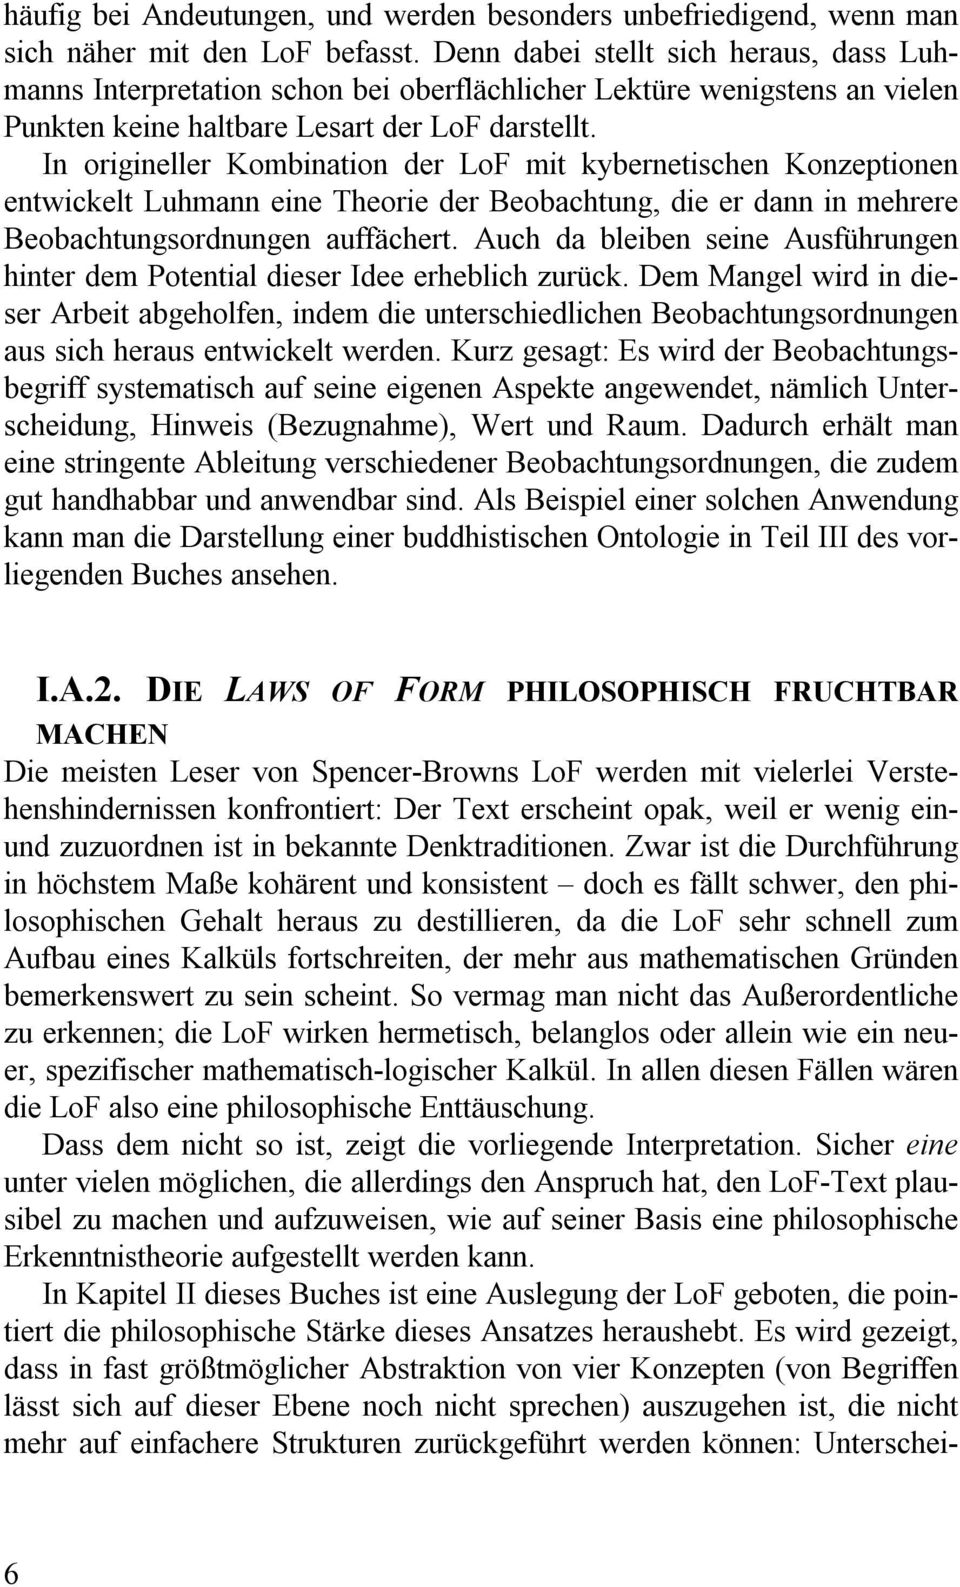 In origineller Kombination der LoF mit kybernetischen Konzeptionen entwickelt Luhmann eine Theorie der Beobachtung, die er dann in mehrere Beobachtungsordnungen auffächert.